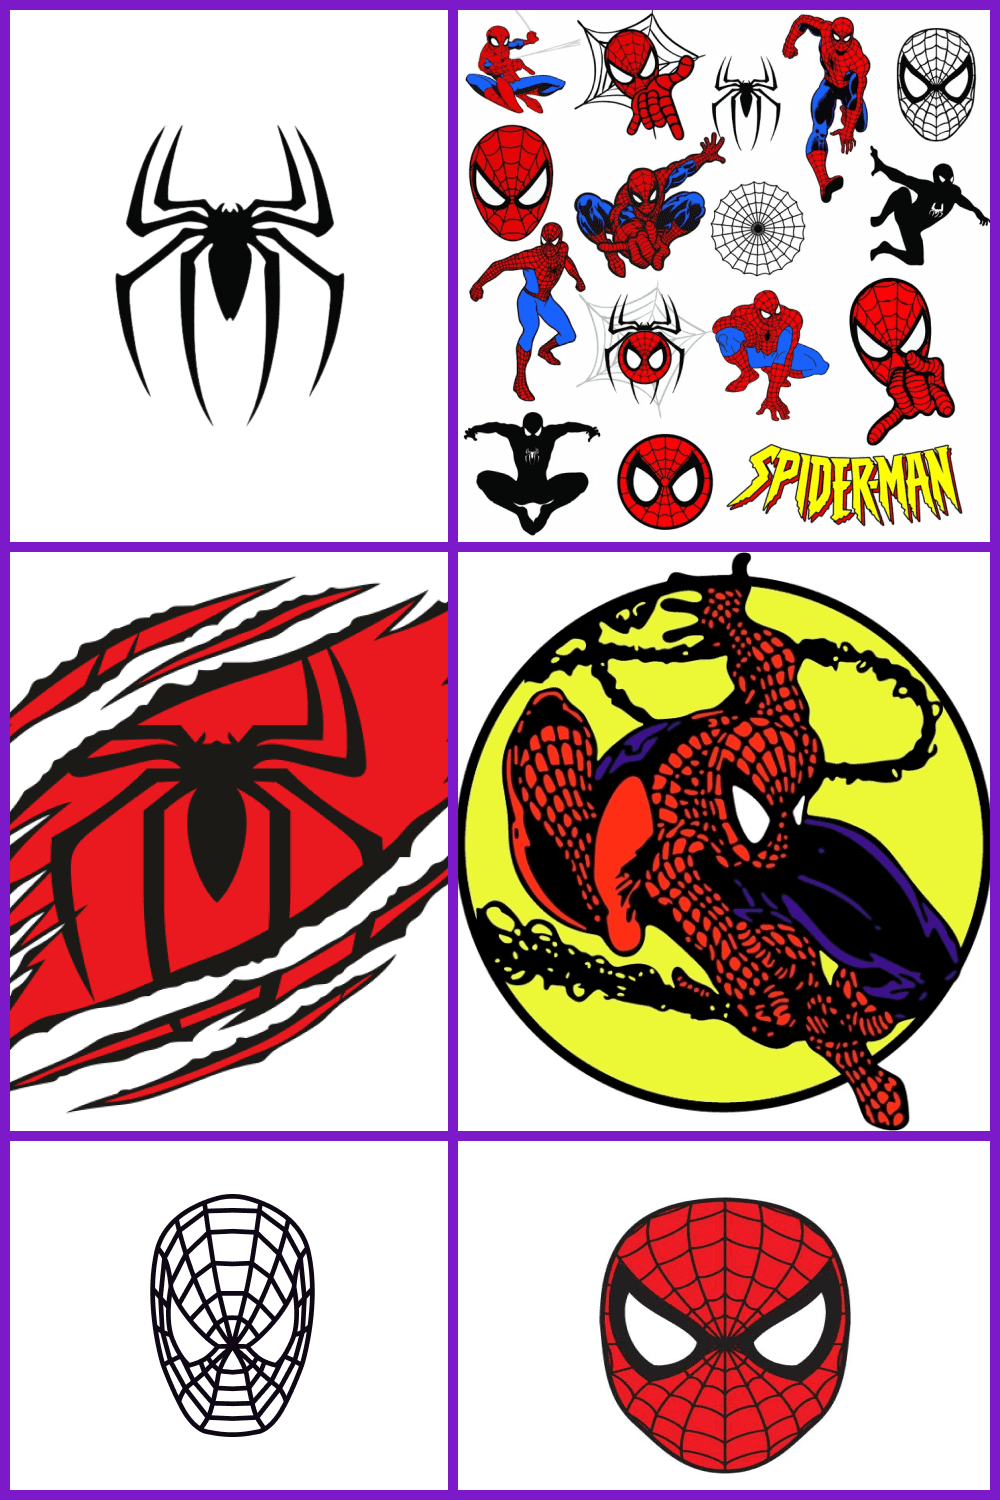 Spiderman SVG Images Pinterest.